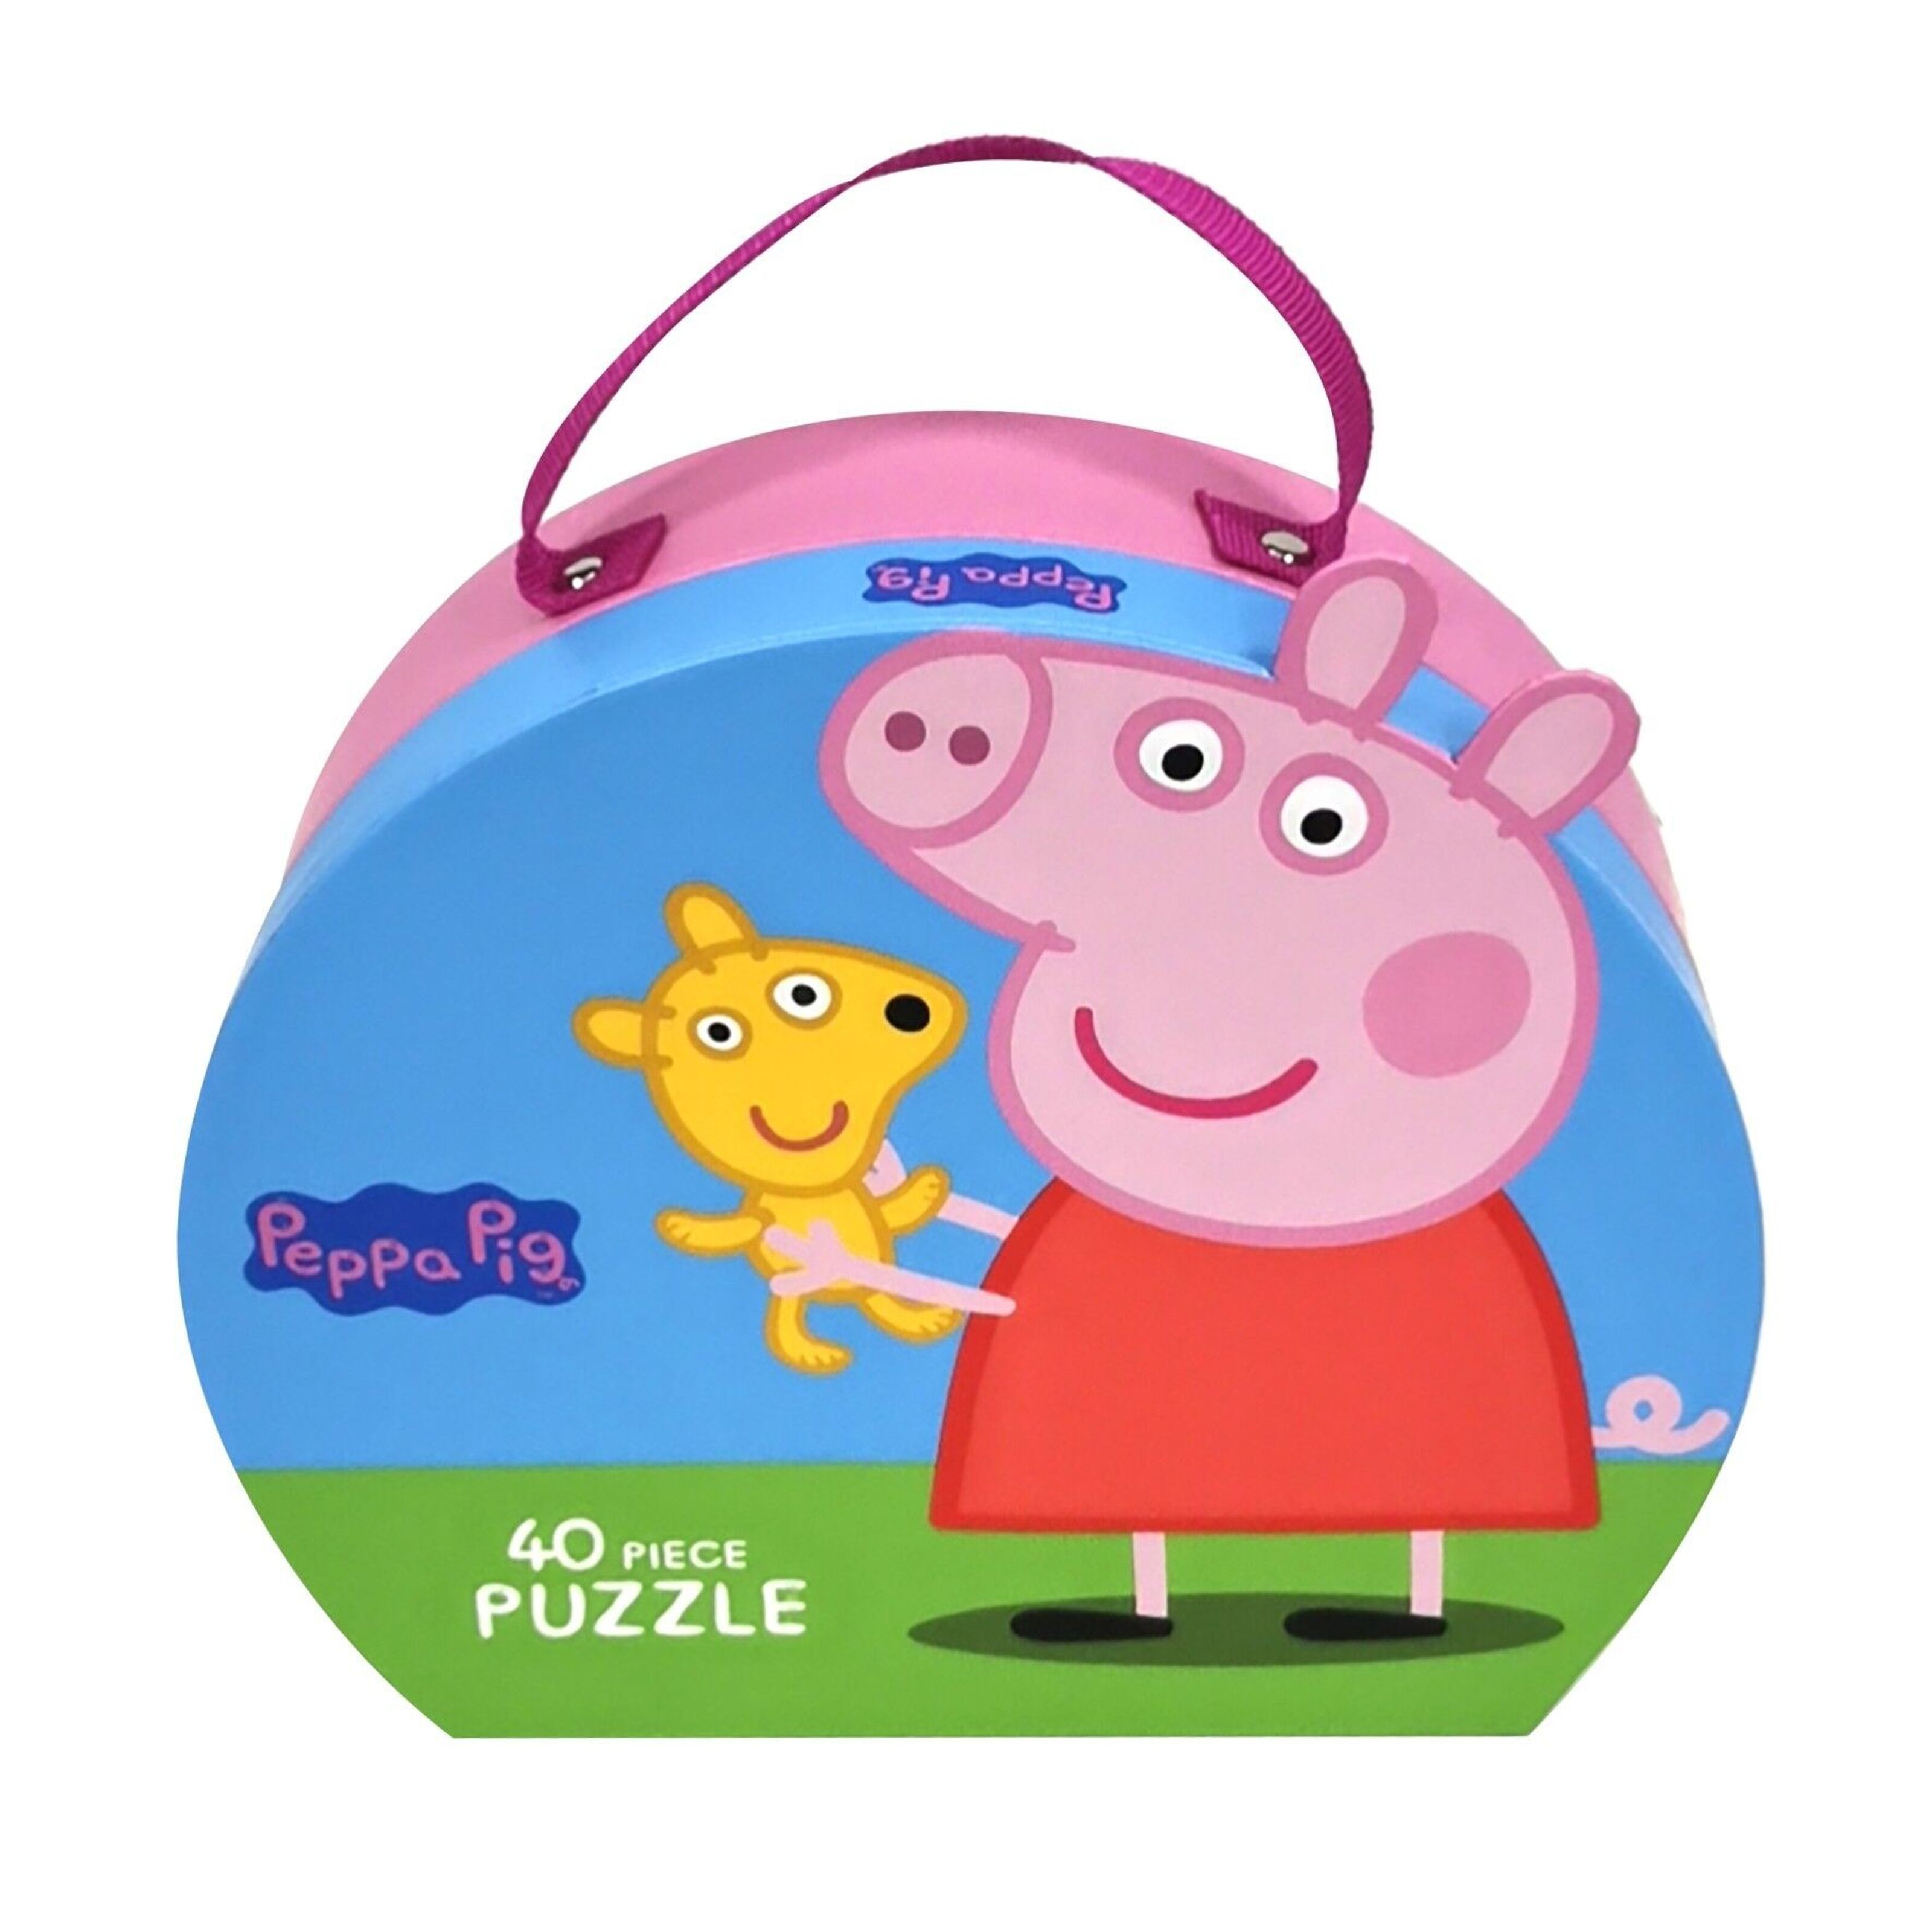 Kaufen Sie Peppa Pig - Puzzle-Koffer - Peppa Teddy zu Großhandelspreisen